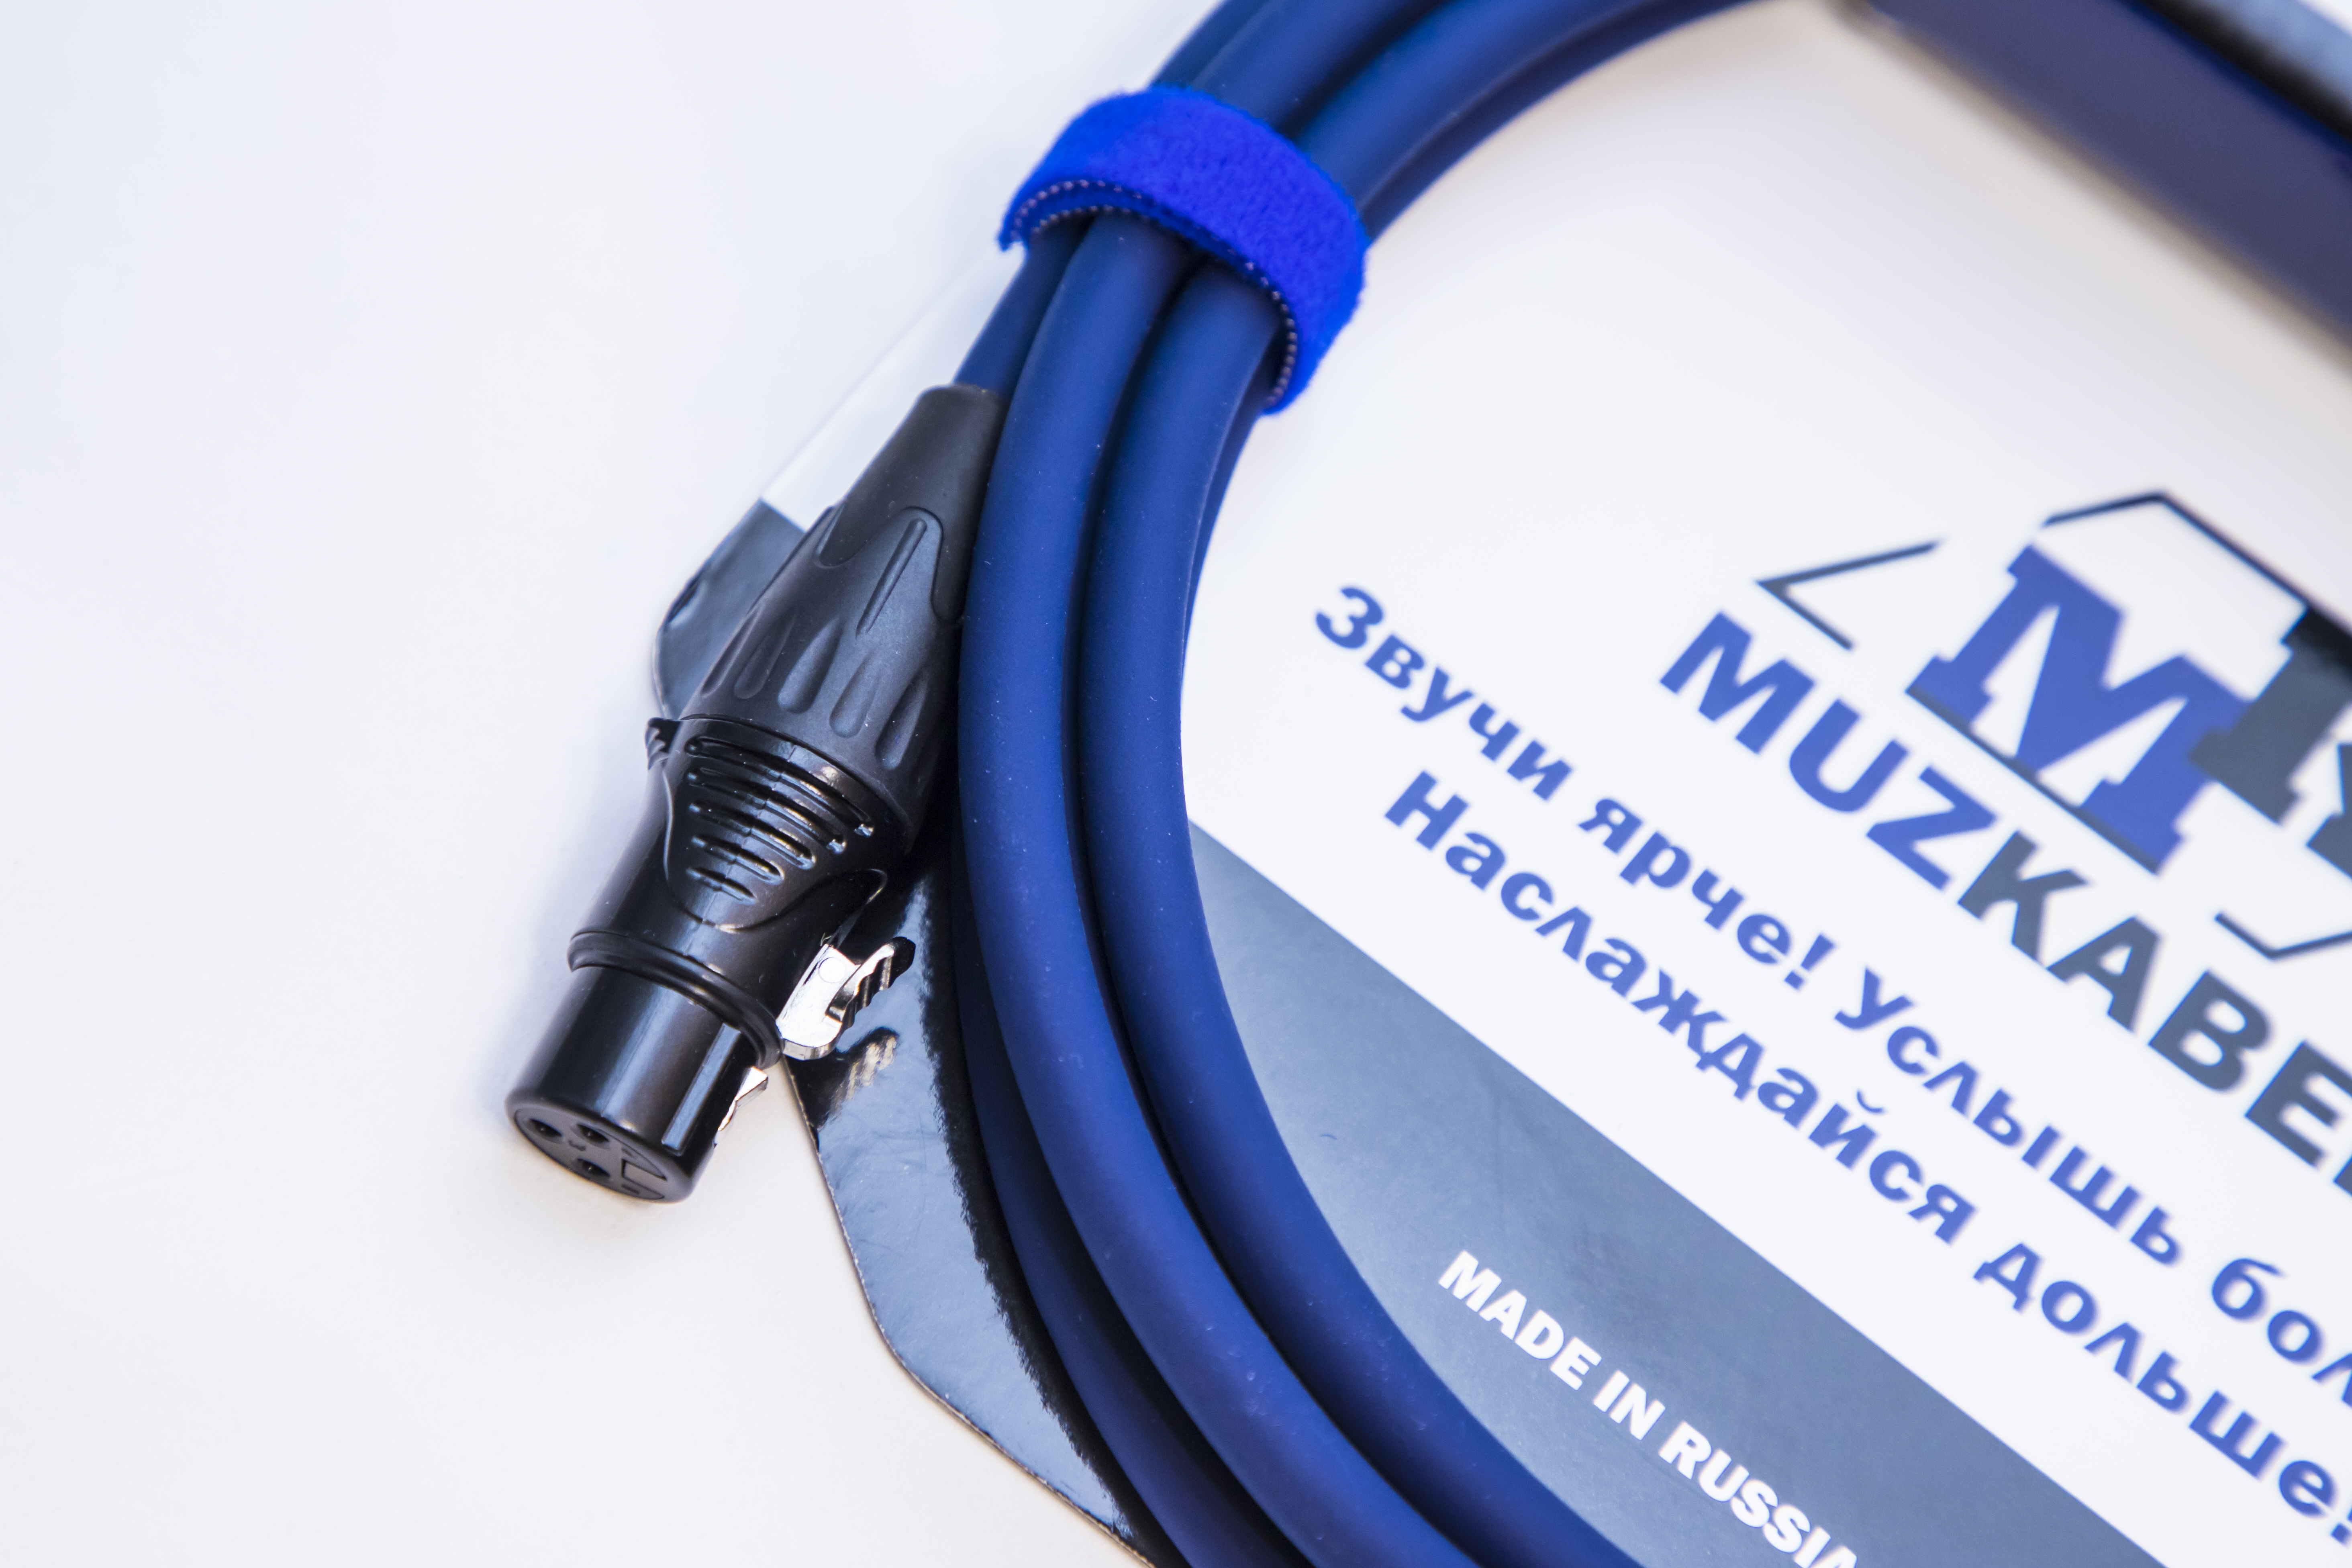 Микрофонный кабель MUZKABEL XXFMK1S - 1 метр, XLR – XLR